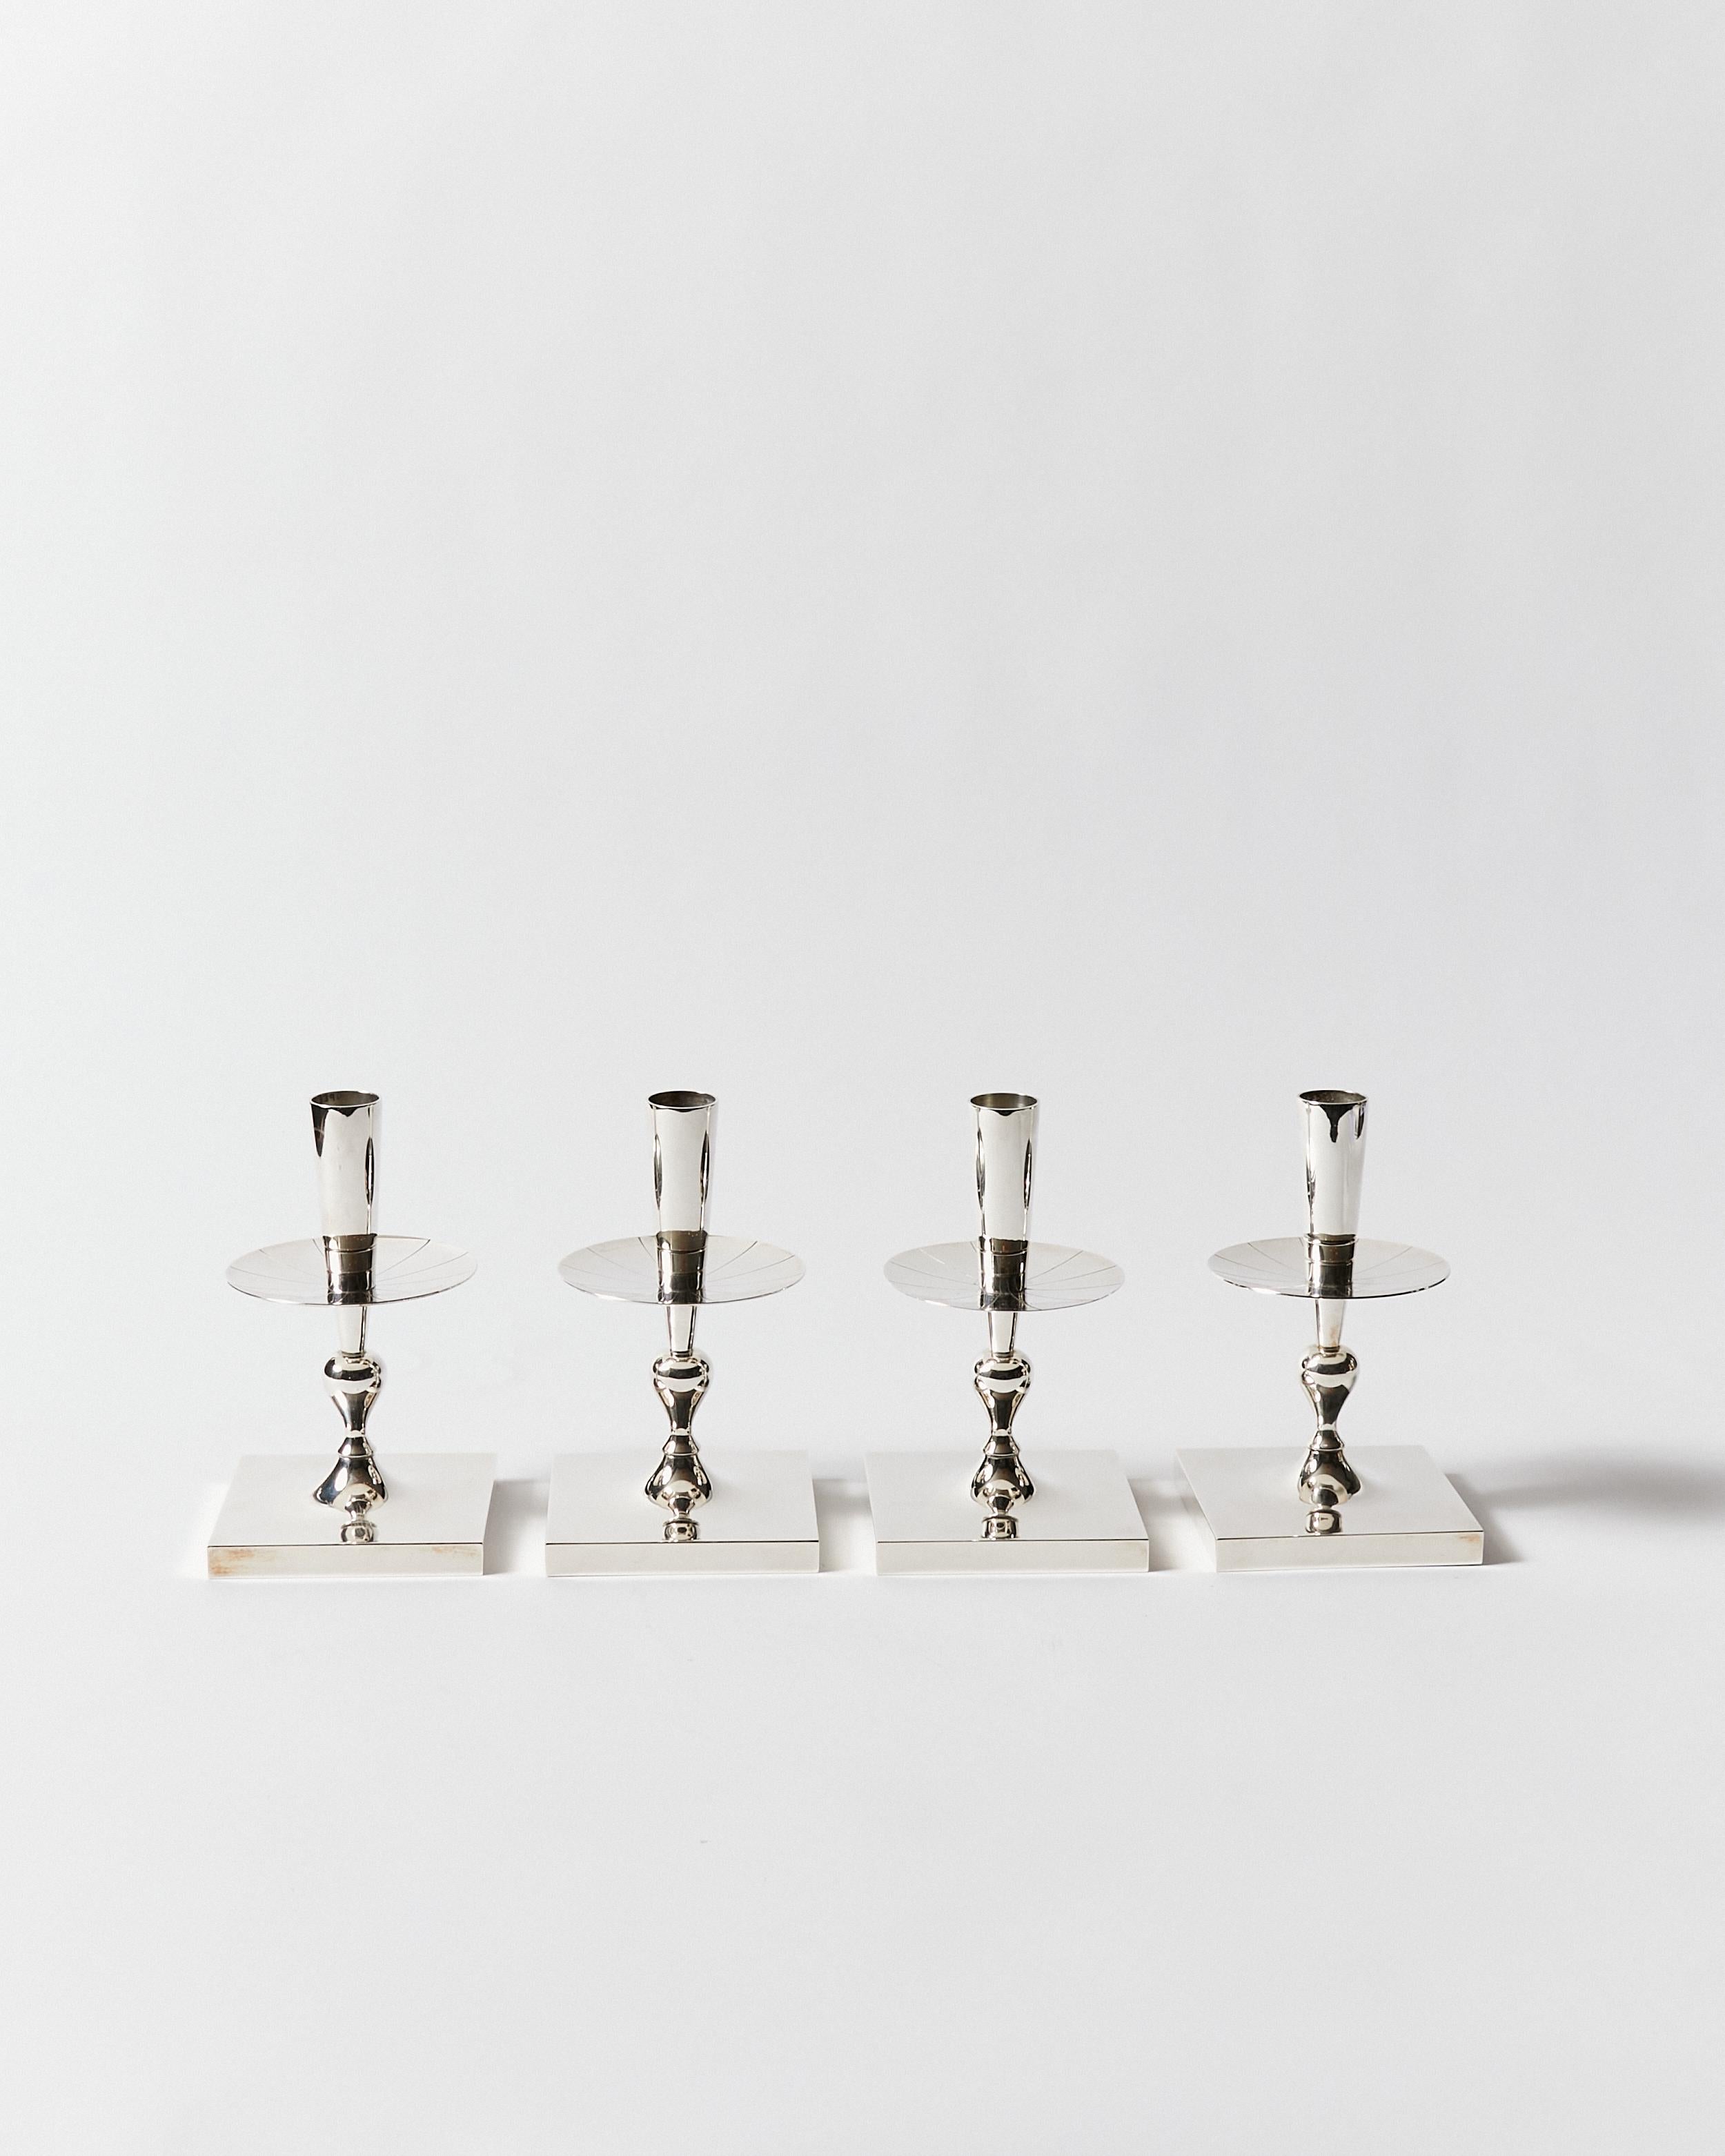 Ensemble de quatre chandeliers avec une base carrée, une colonne stylisée et un larmier gravé. Conçu par Tommi Parzinger pour Dorlyn-Silversmiths. Cachet de la signature en bas.